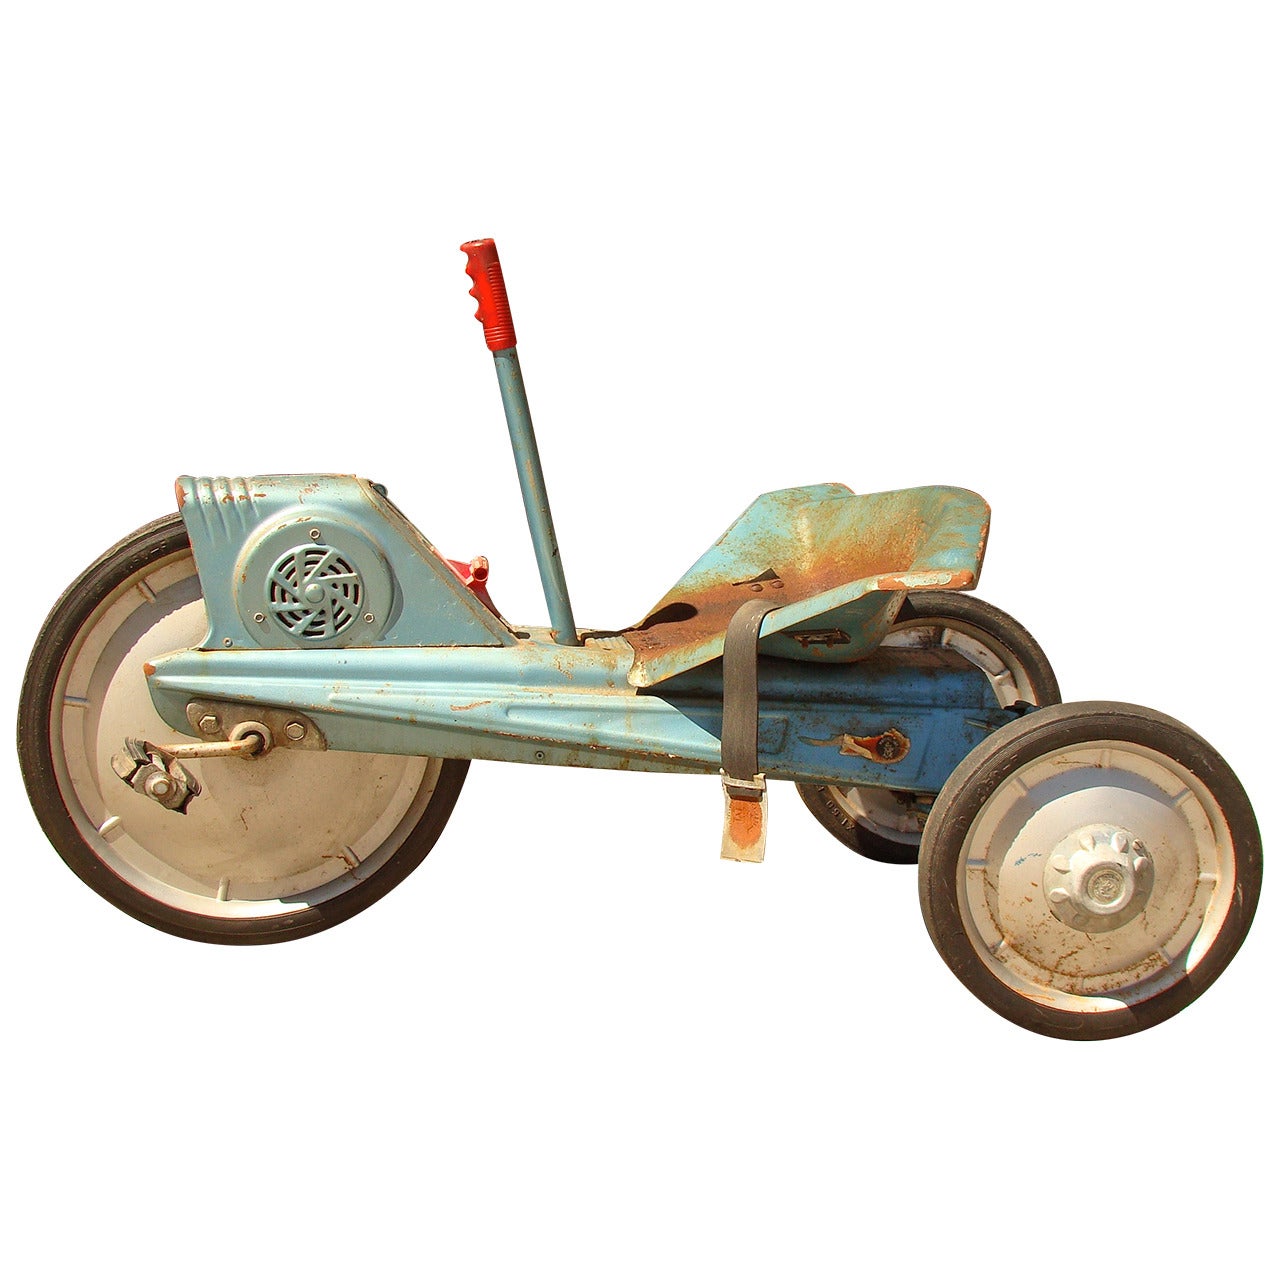 Mattel Vrroom X15 Pedal Car, 1963 For Sale